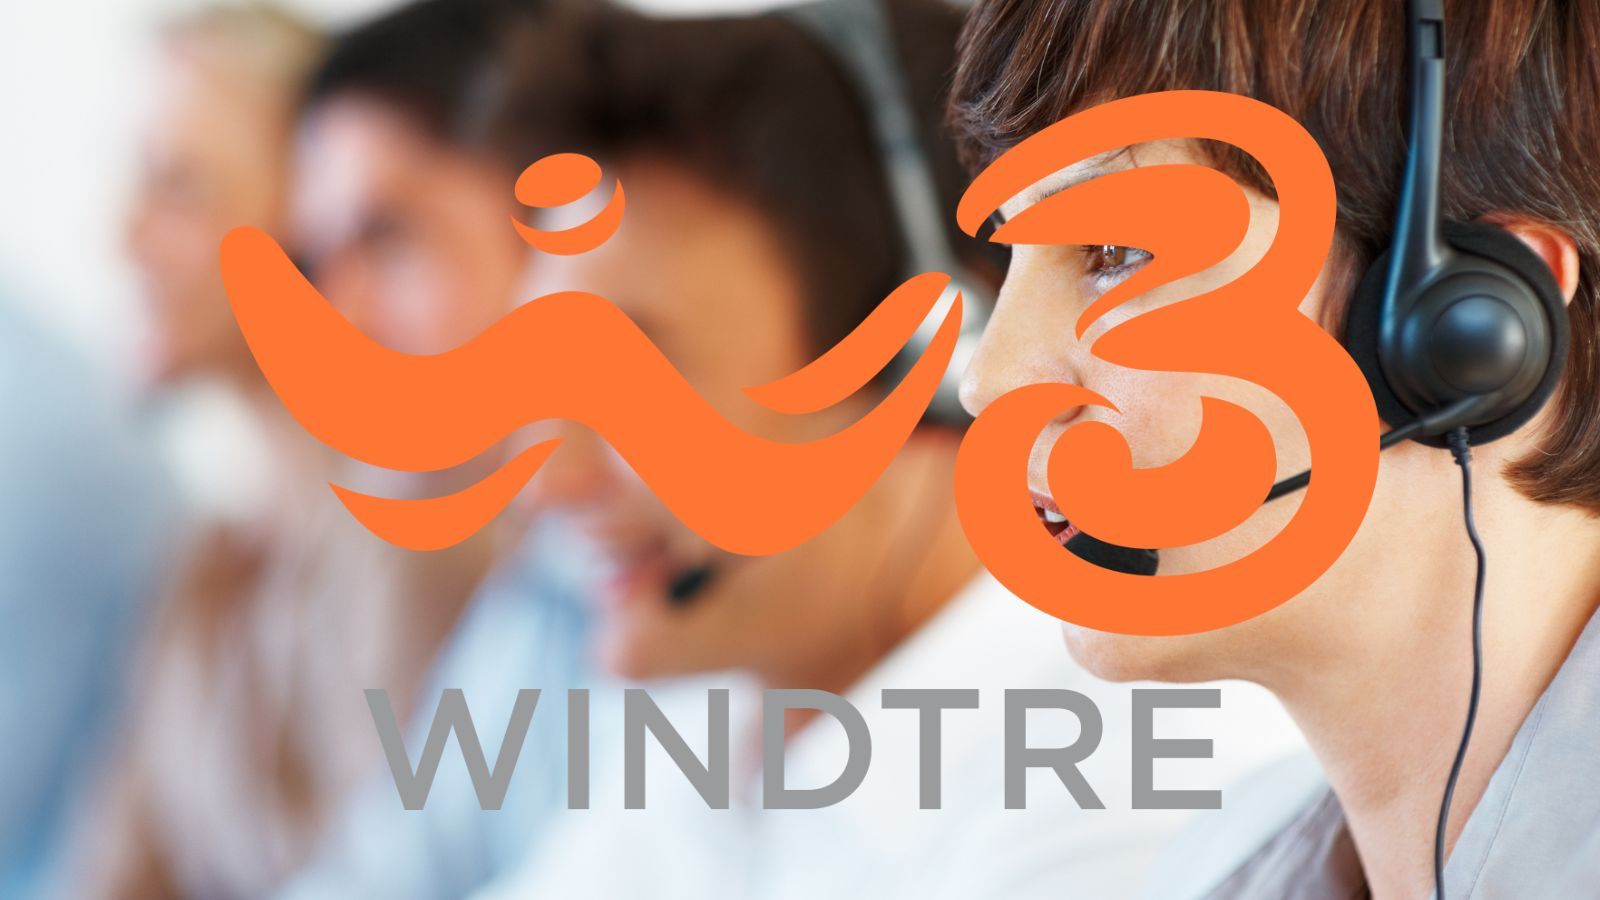 WindTre, correte subito ad attivare la promo da 7€ ed un SERVIZIO gratis